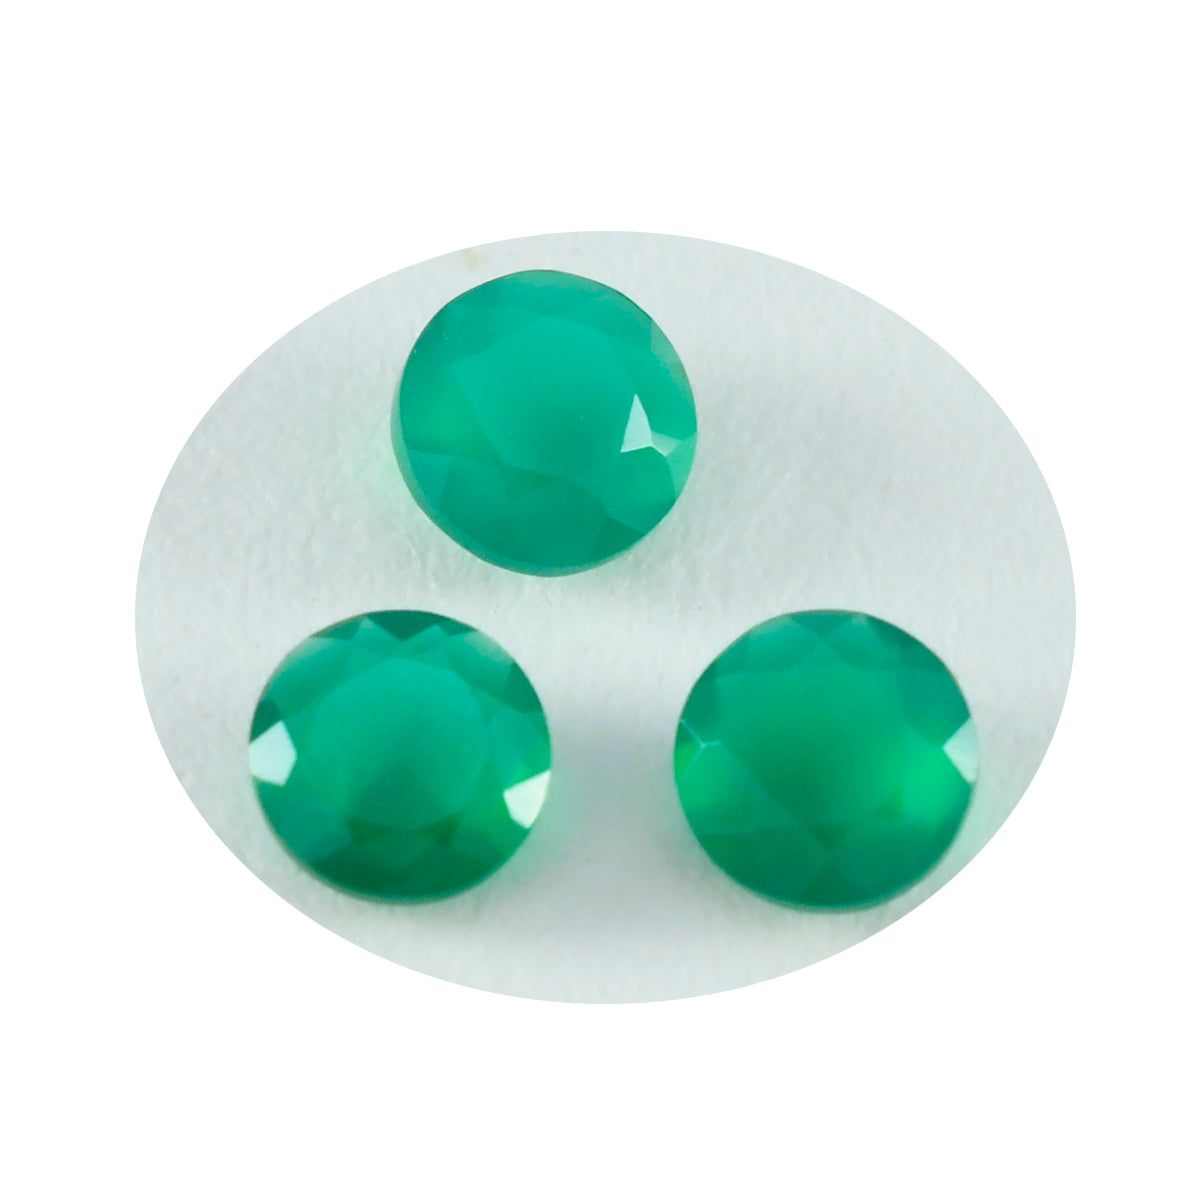 riyogems 1 шт. натуральная зеленая яшма граненая 6x6 мм круглая форма довольно качественный свободный драгоценный камень